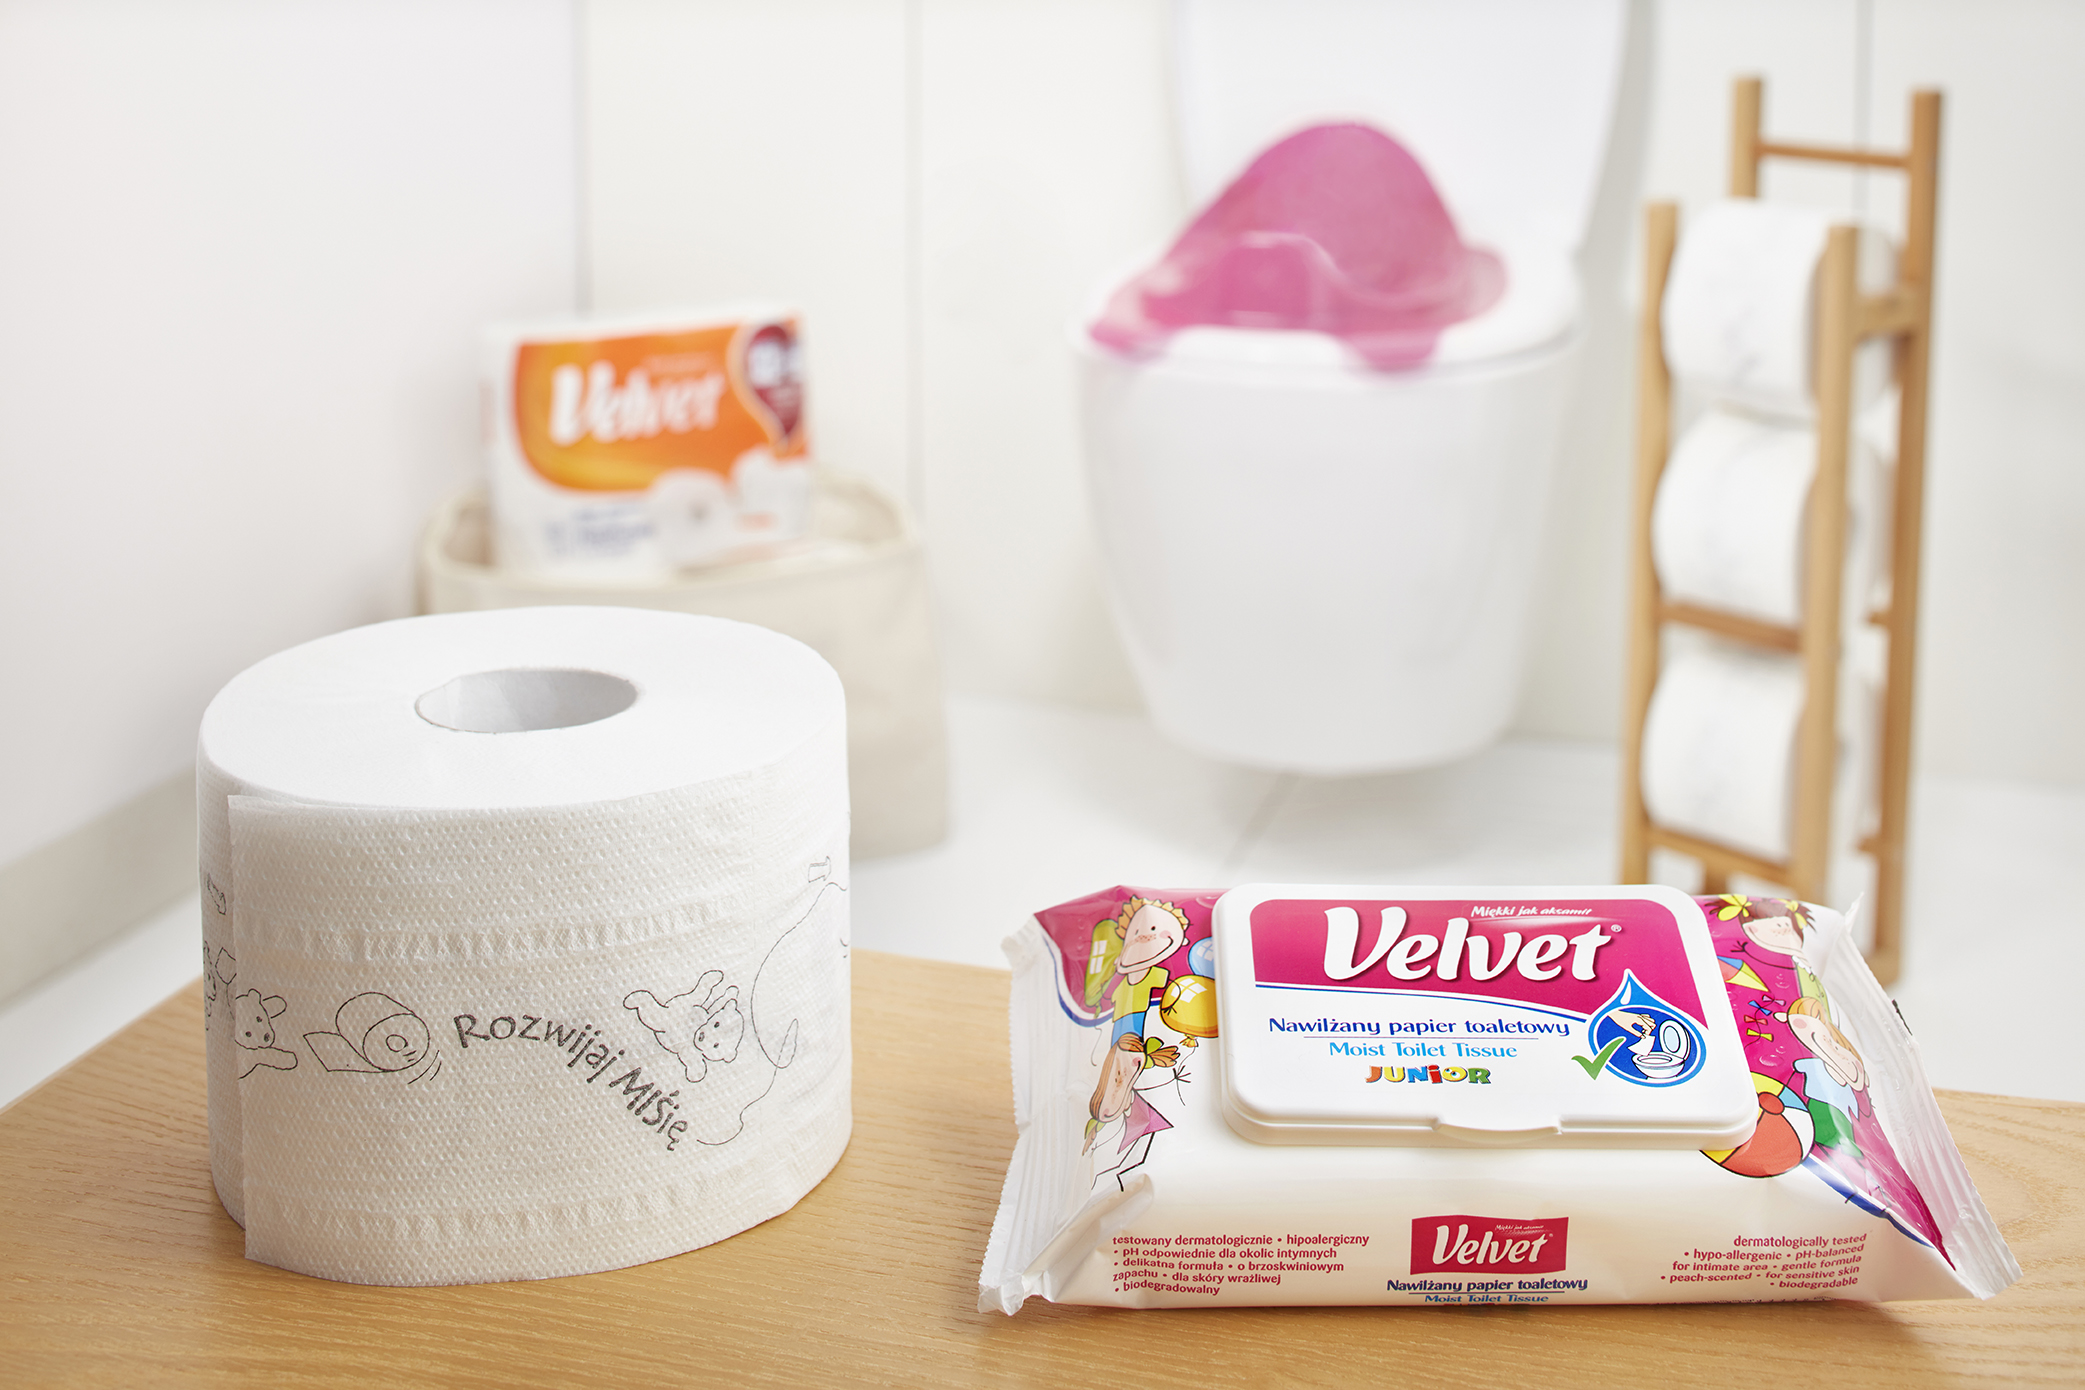 Junior Velvet moist toilet paper